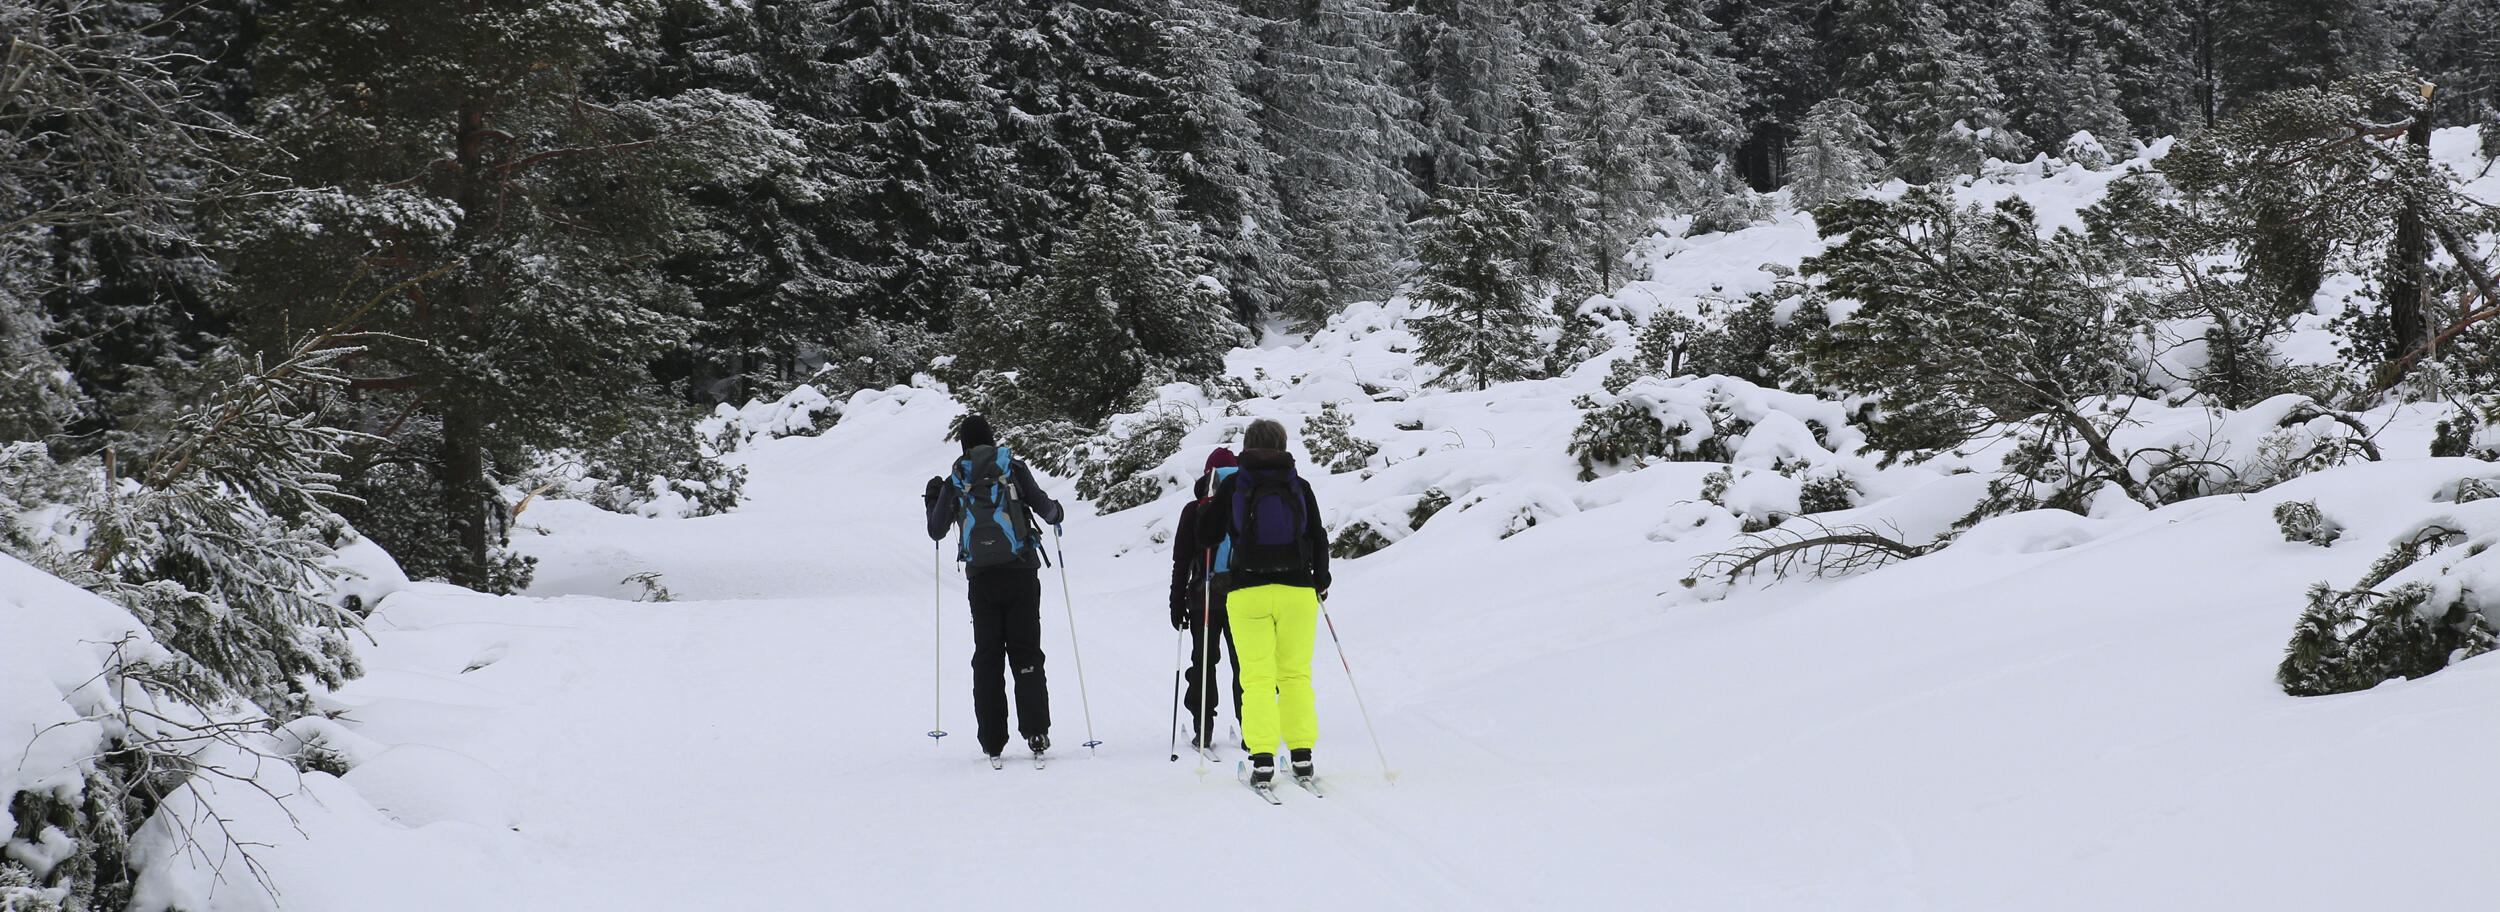 Drei Menschen sind auf Skiern in einem verschneiten Wald unterwegs. Foto: Franziska Lemoine (Nationalpark Schwarzwald)